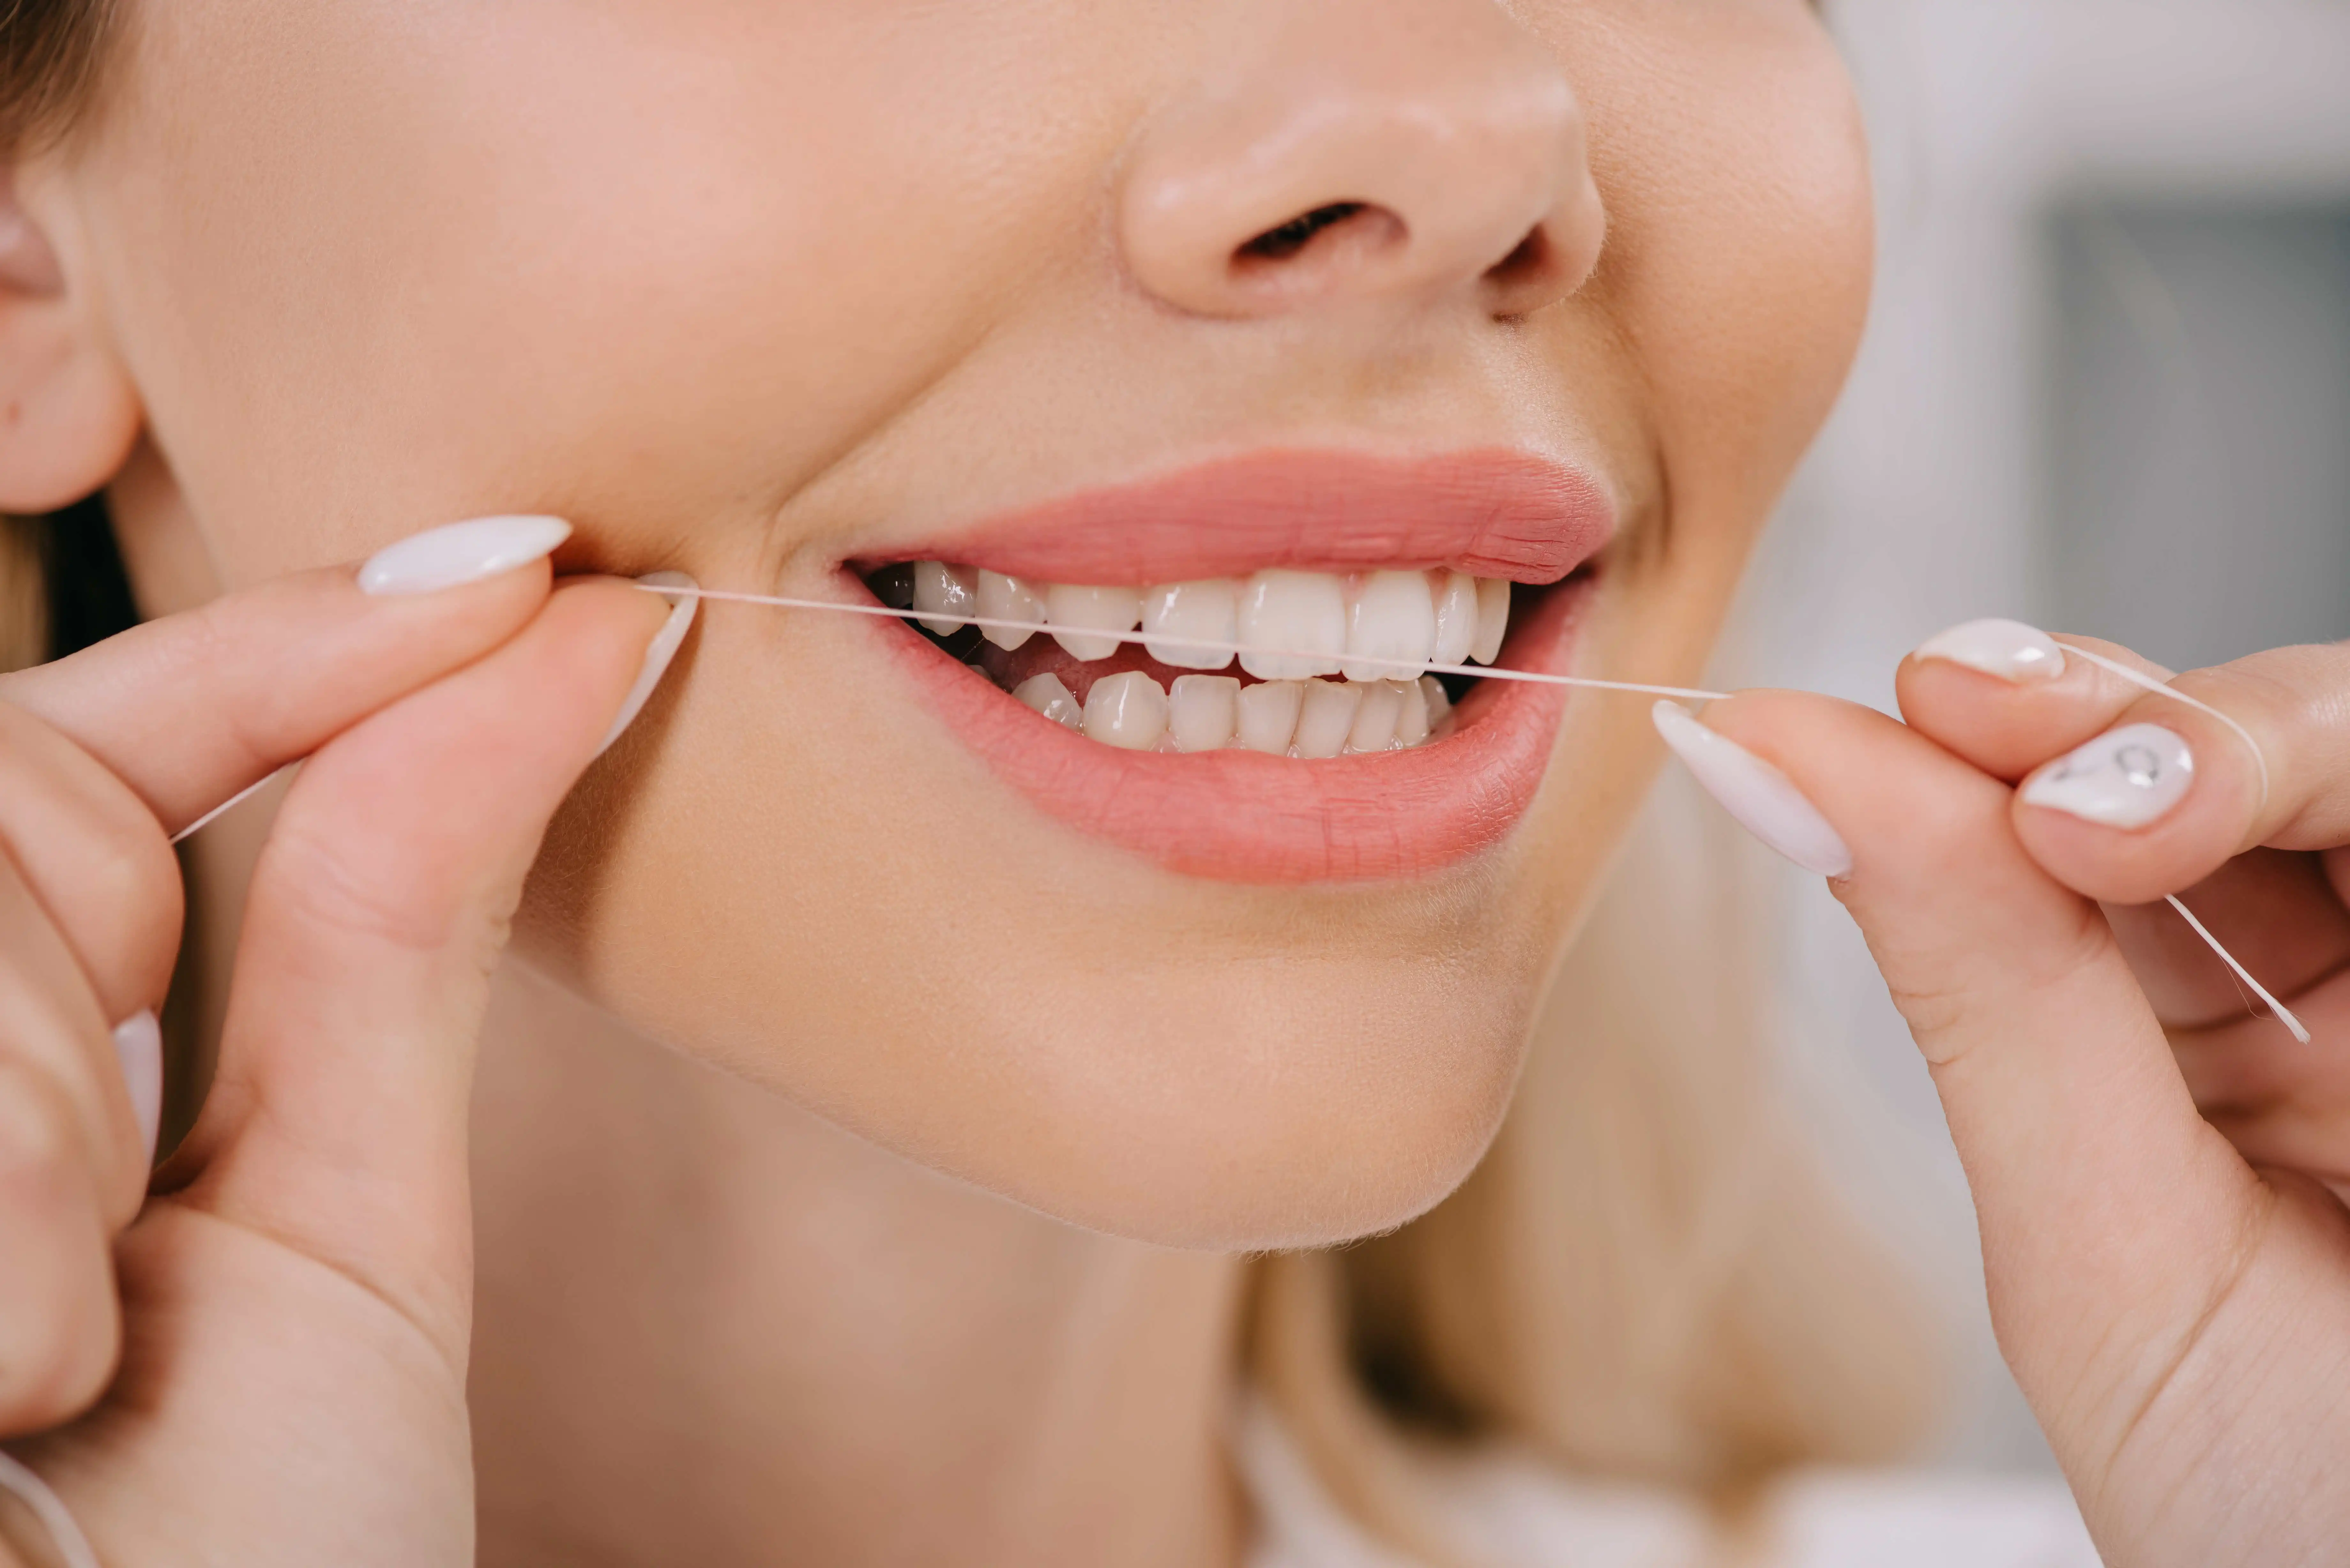 woman flossing teeth